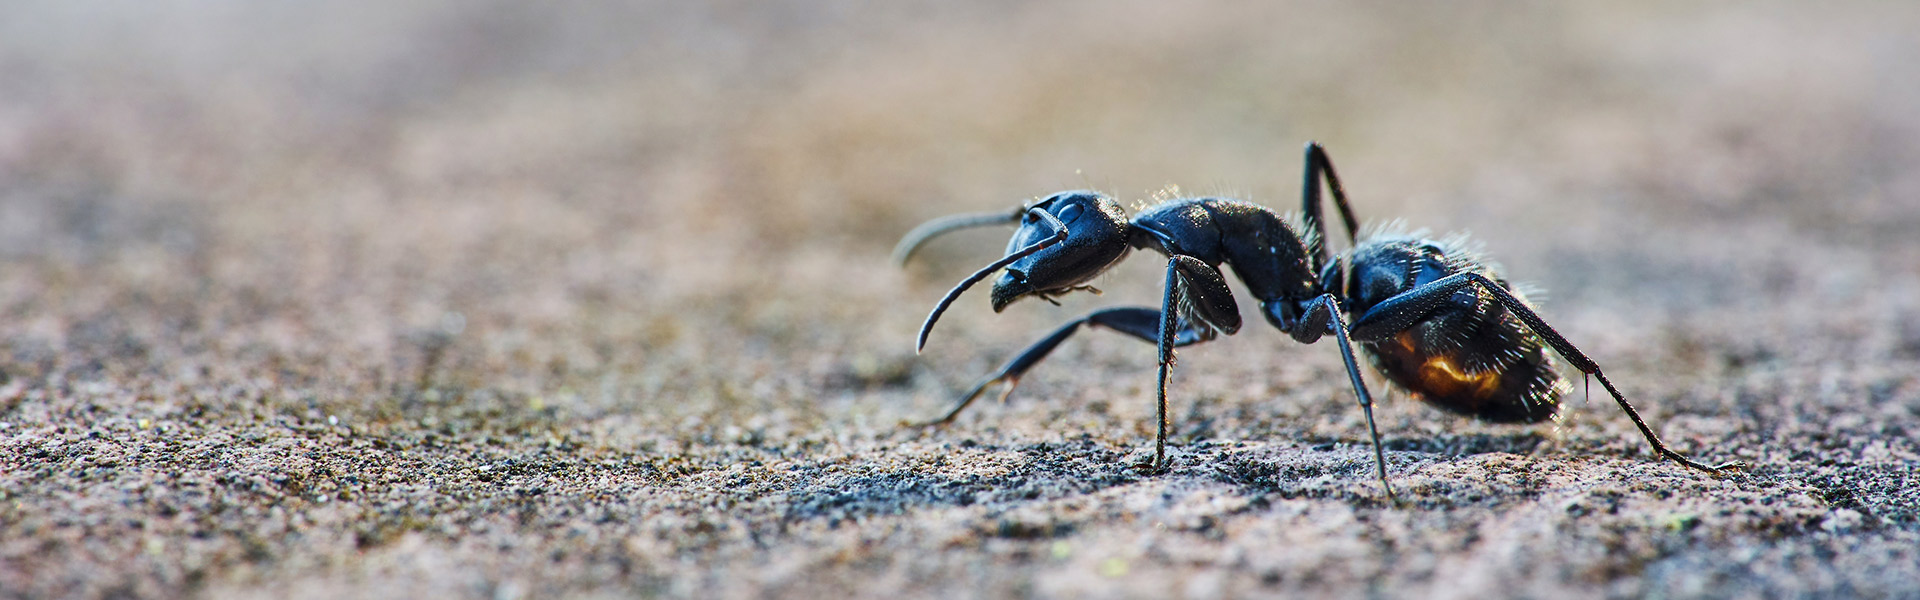 Como manter as formigas longe da comida do seu pet